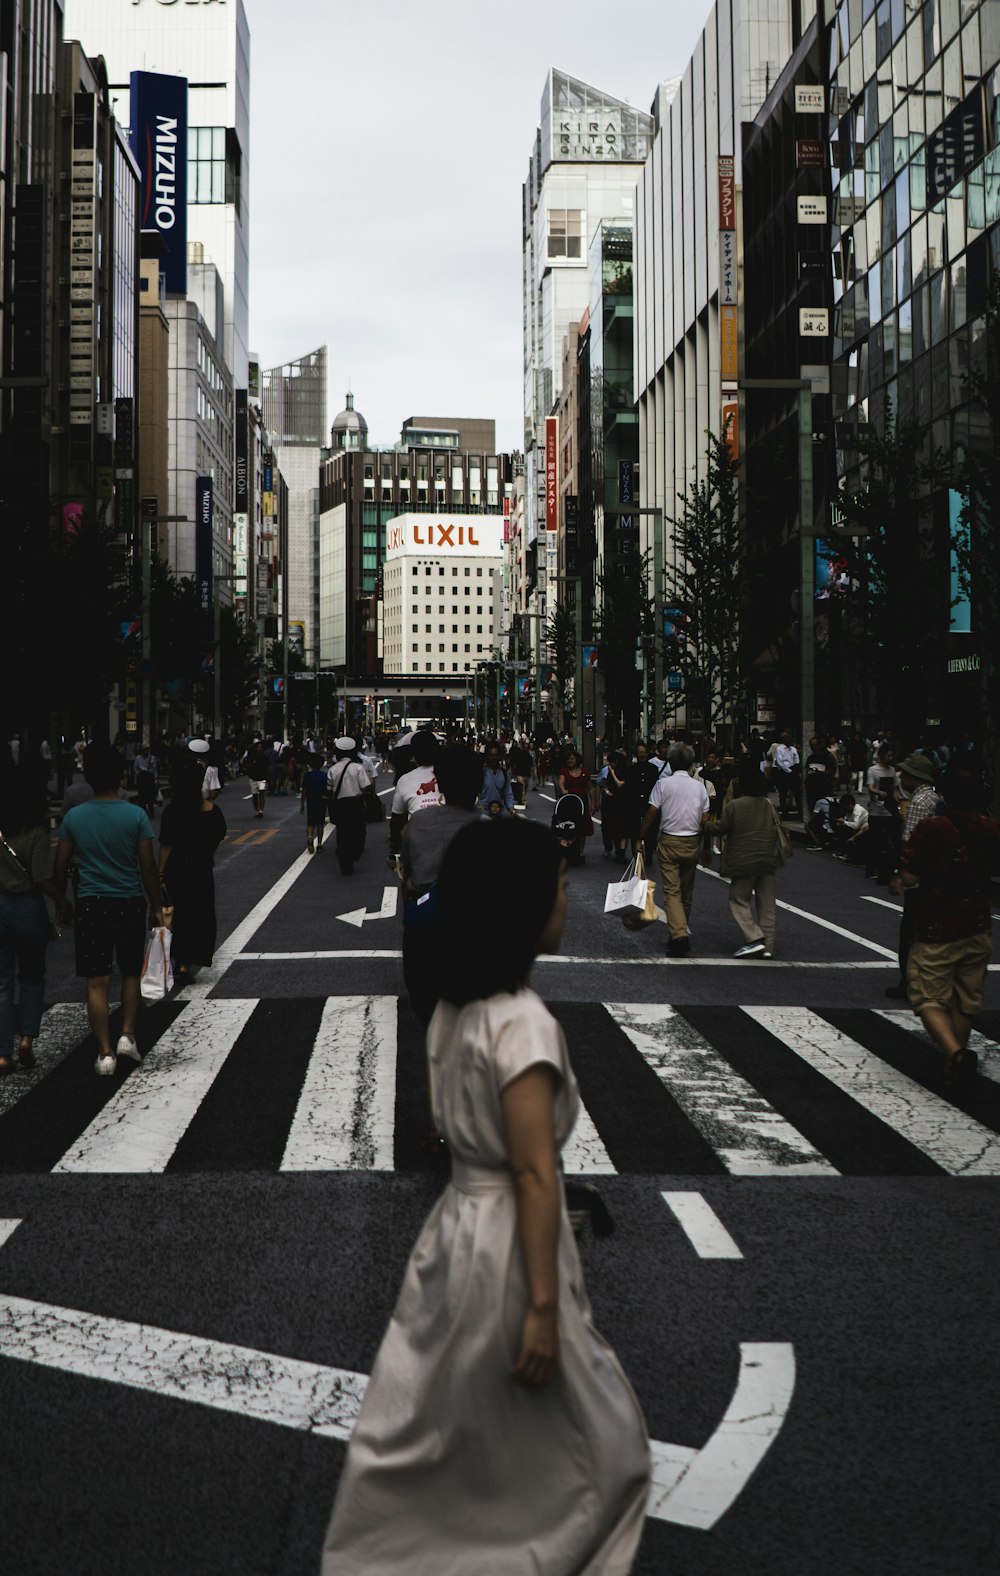 a woman walking across a cross walk in a city